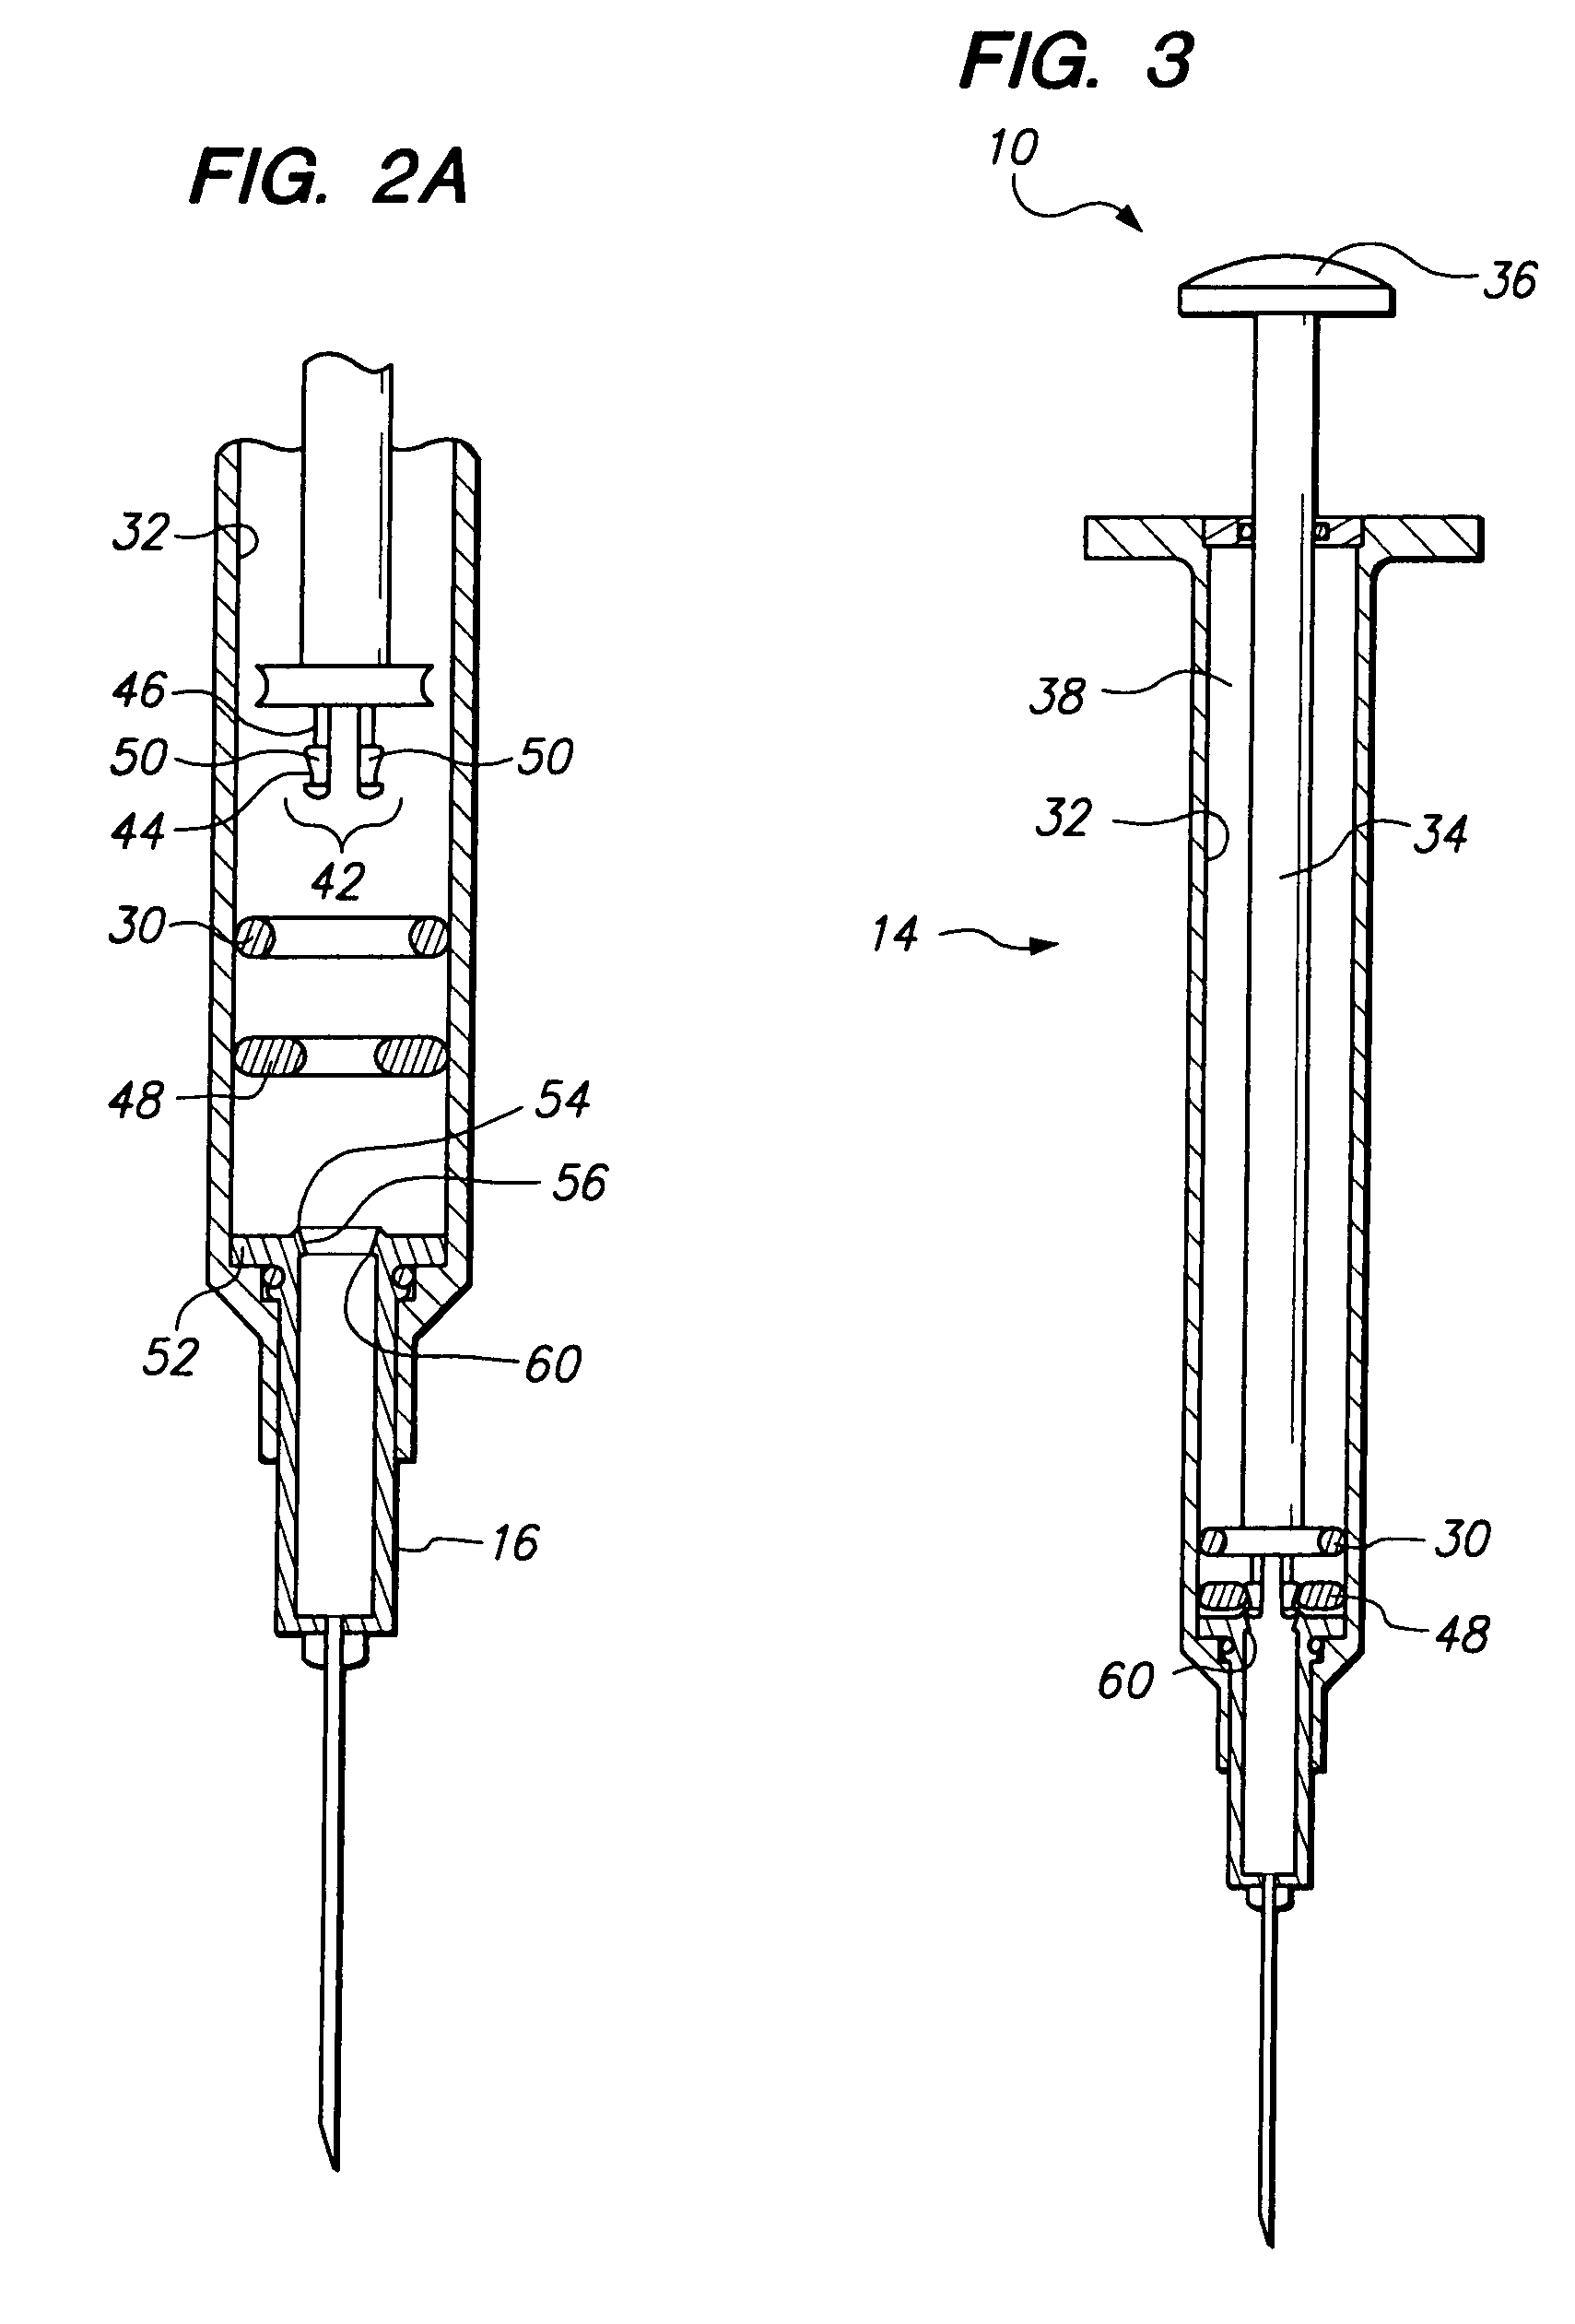 Safety needle syringe braking system